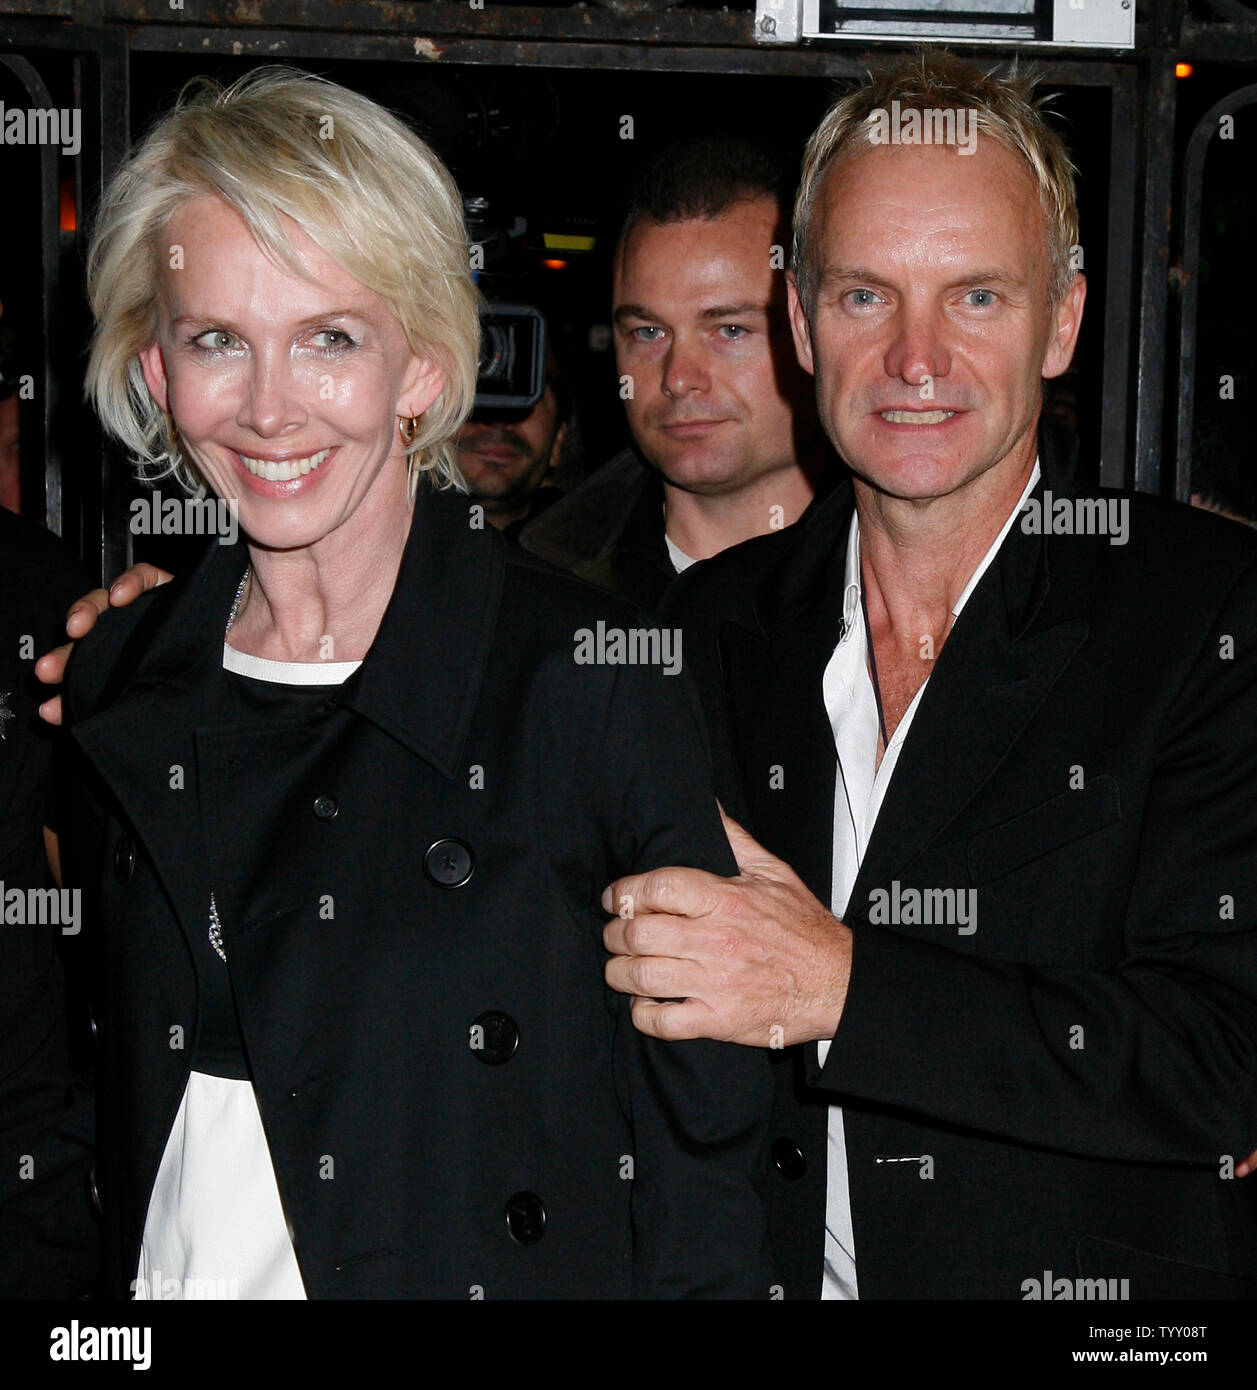 Cantante Sting della banda "La polizia' e sua moglie Trudie Styler arrivare alla sala VIP lungo gli Champs Elysees dopo la band ha suonato in concerto a Parigi il 30 settembre 2007. (UPI foto/David Silpa) Foto Stock